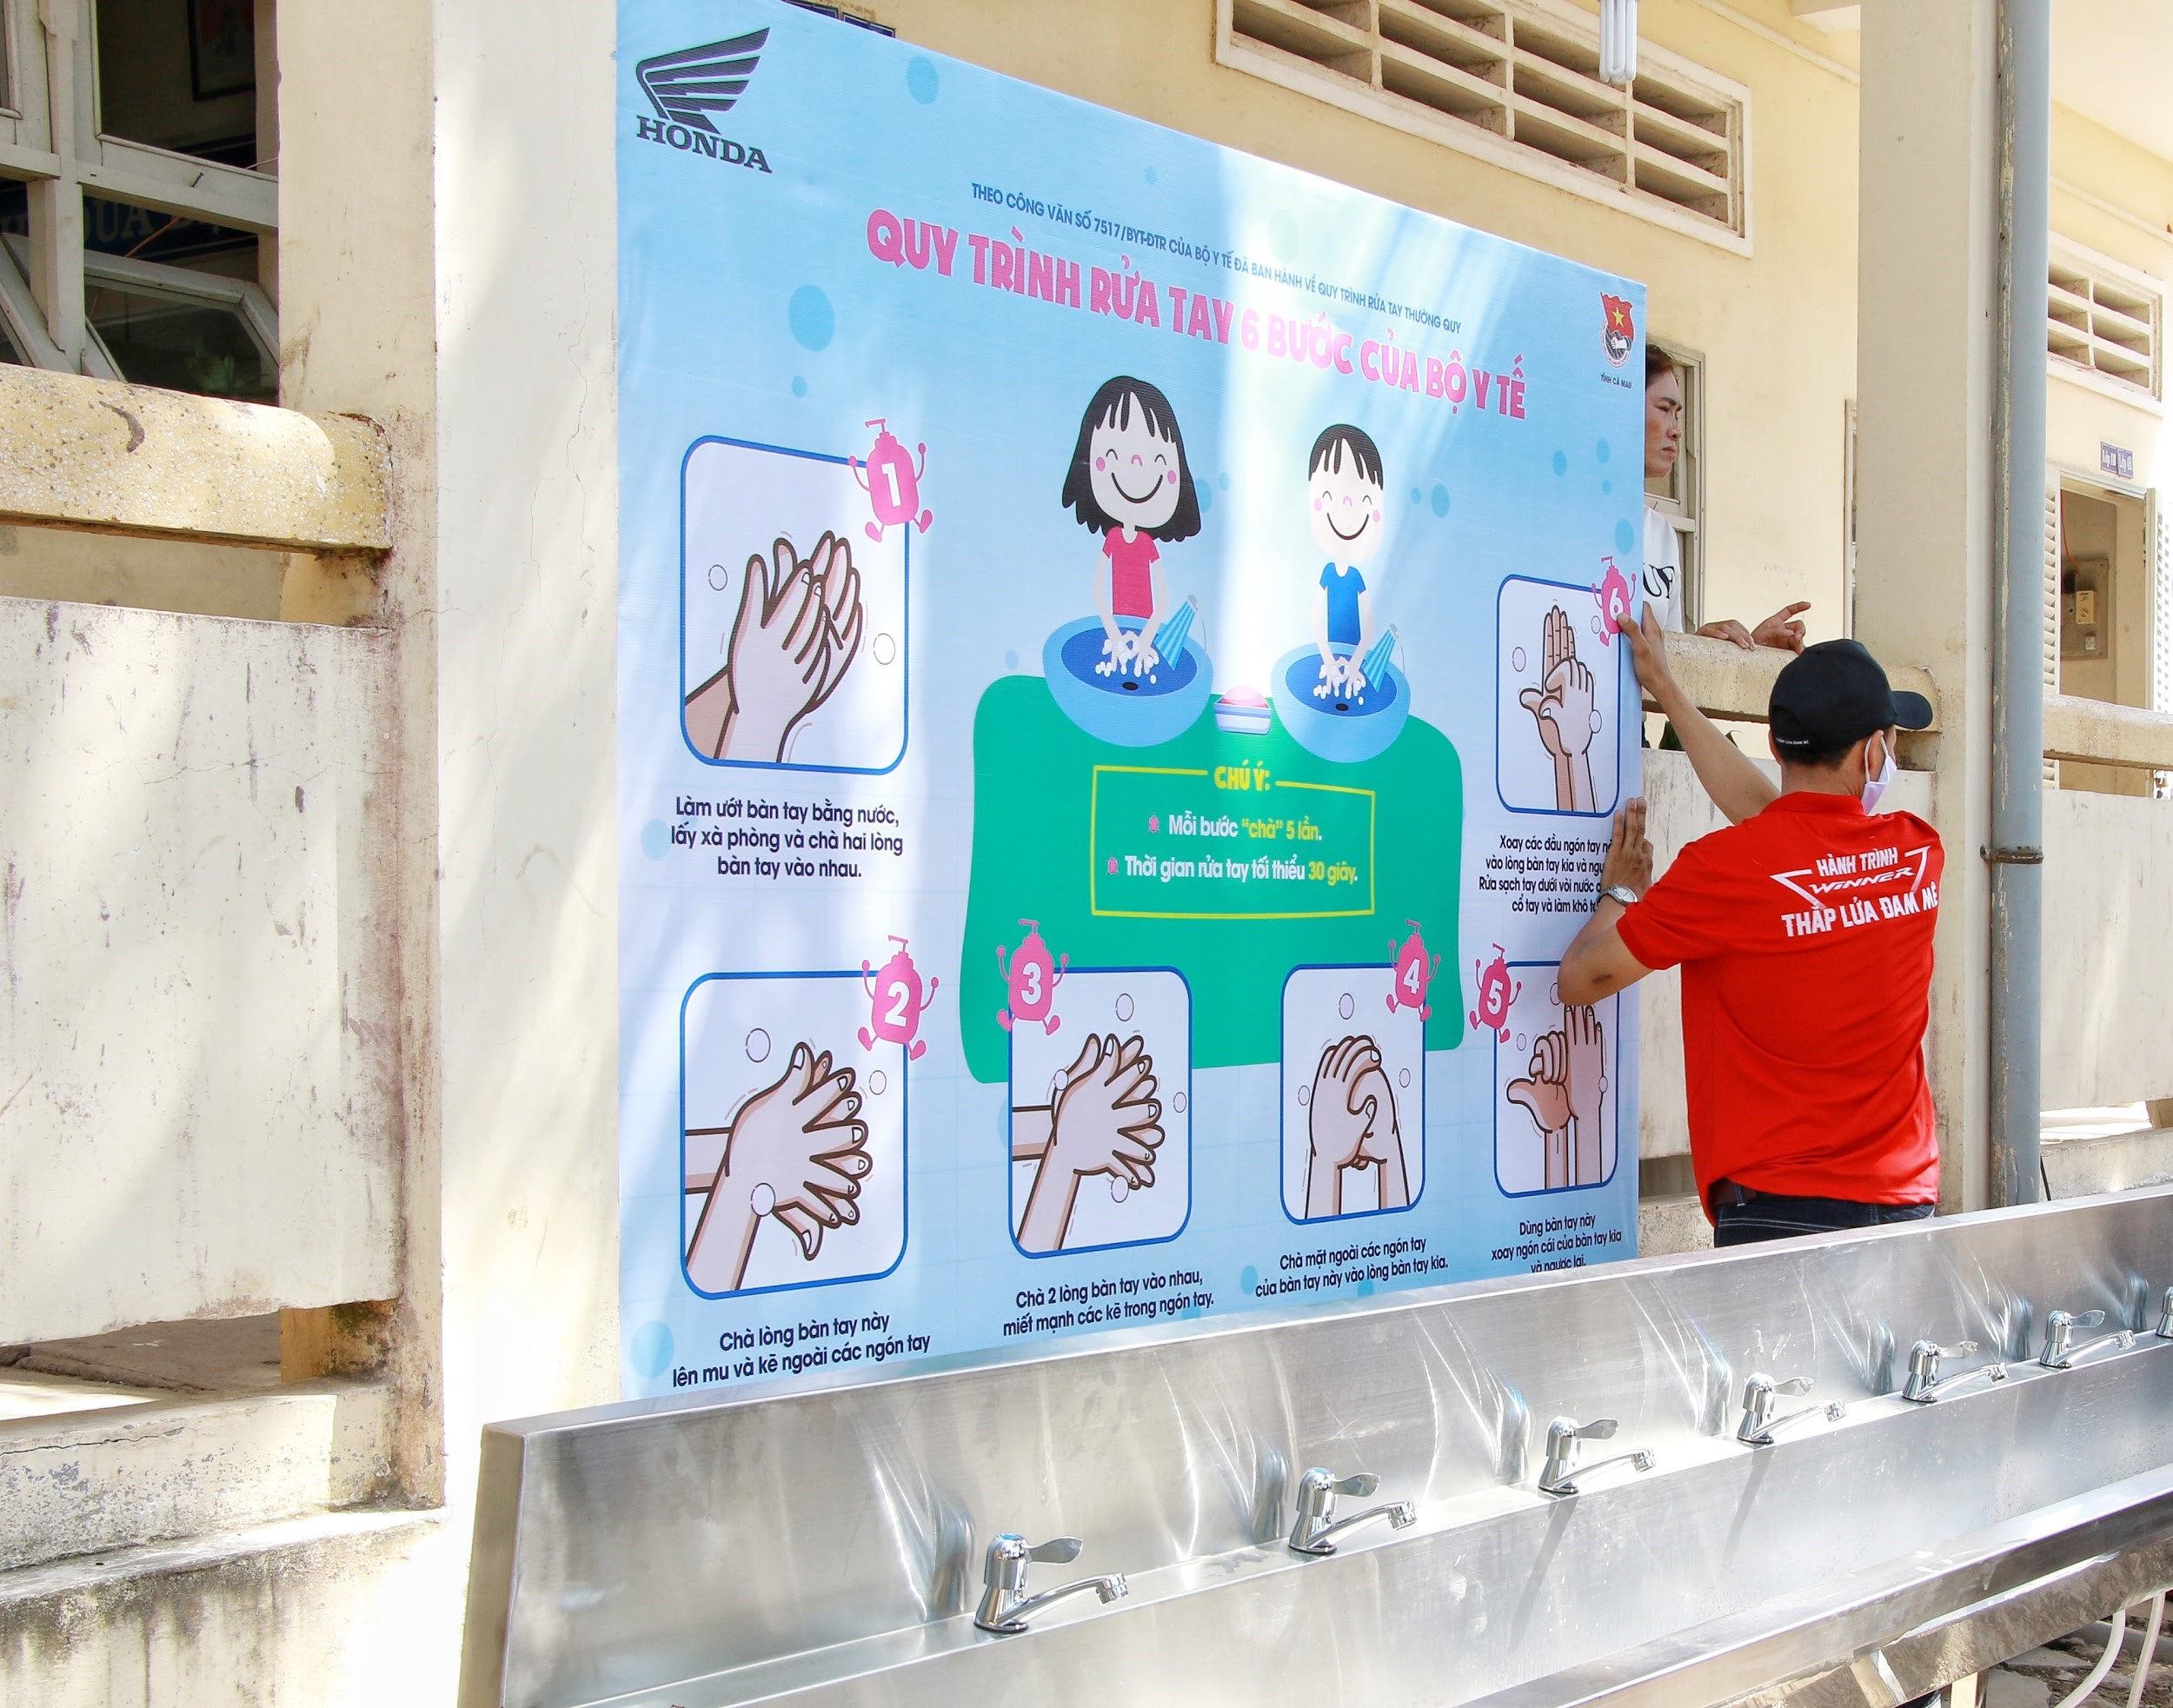 Quy trình rửa tay chuẩn 6 bước của Bộ Y tế được lắp đặt để hướng dẫn cho các em học sinh